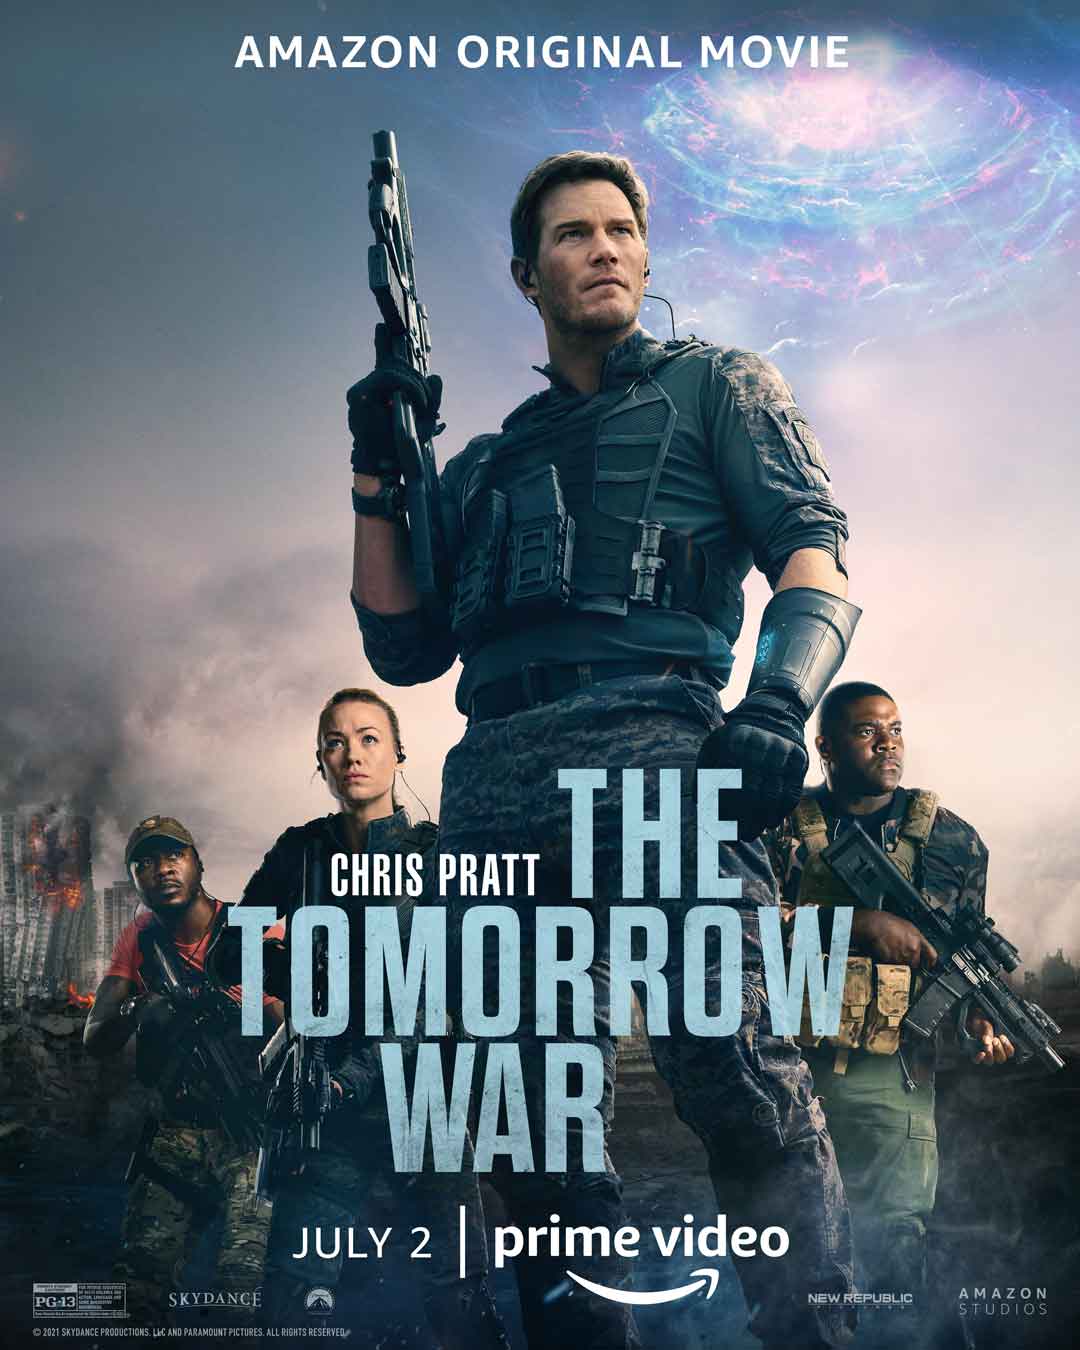 THE TOMORROW WAR Full Trailer For Chris Pratt’s New Action Scifi